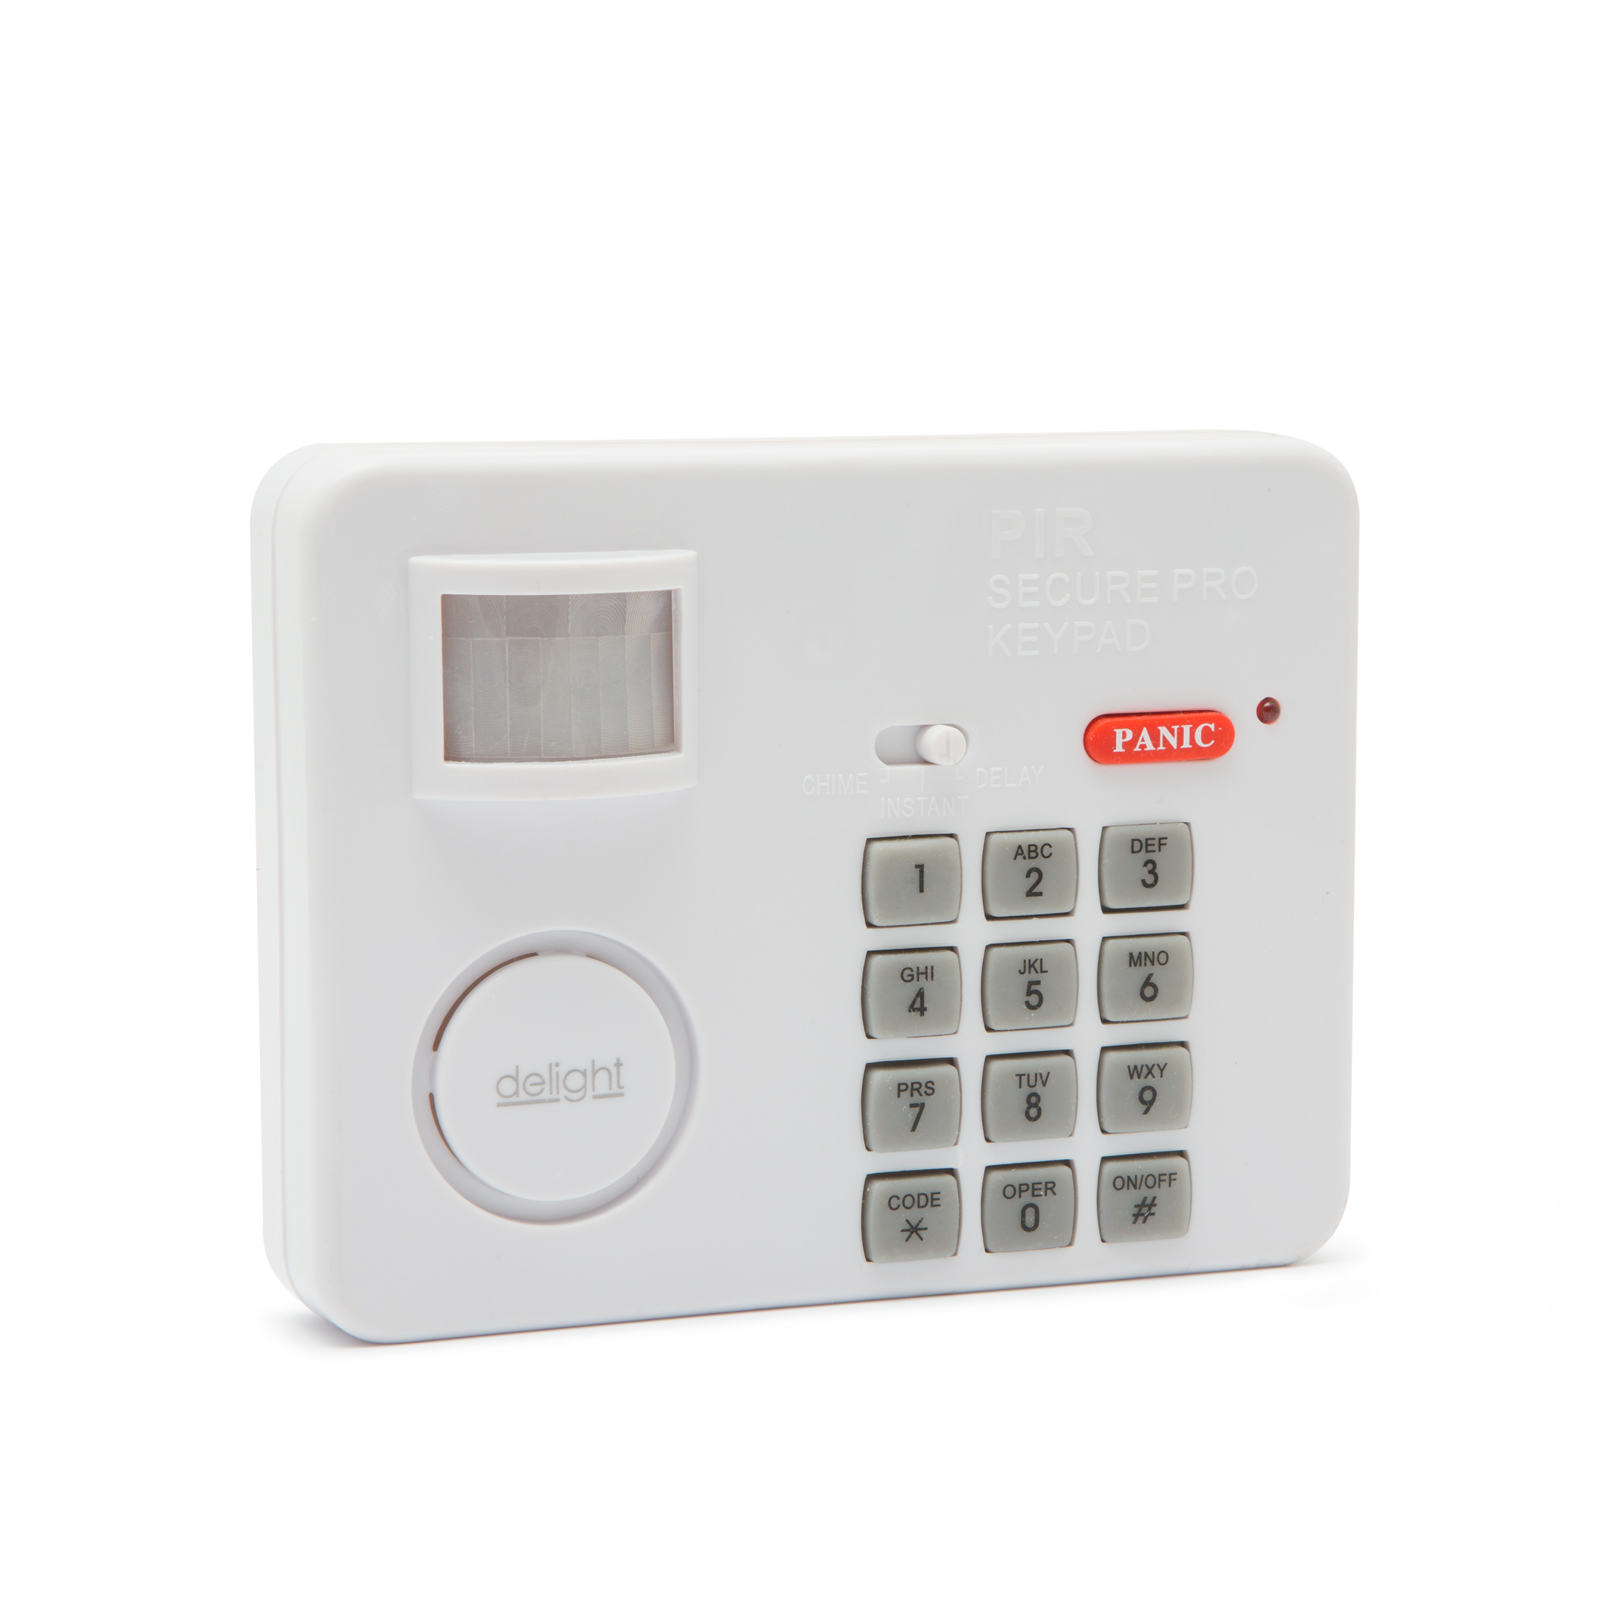 Alarm s pohybovým senzorem s PIN kódovou ochranou